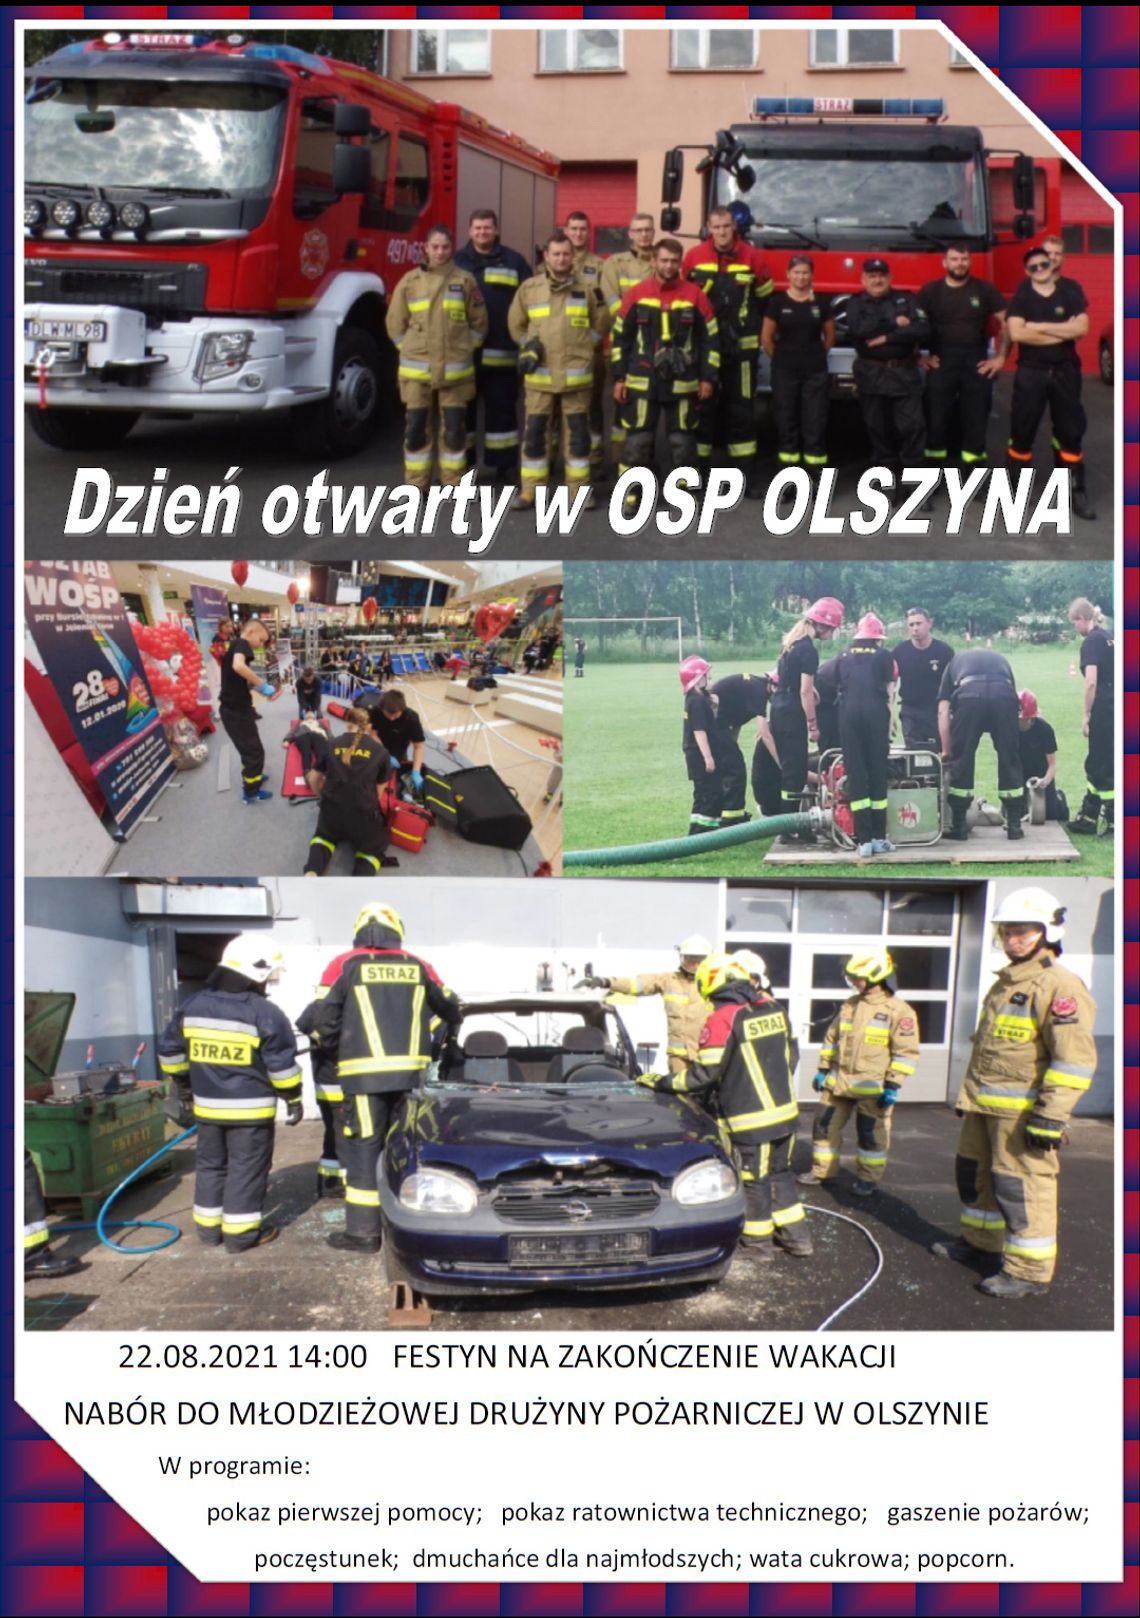 OSP Olszyna organizuje "Festyn na zakończenie wakacji" i dzień otwarty